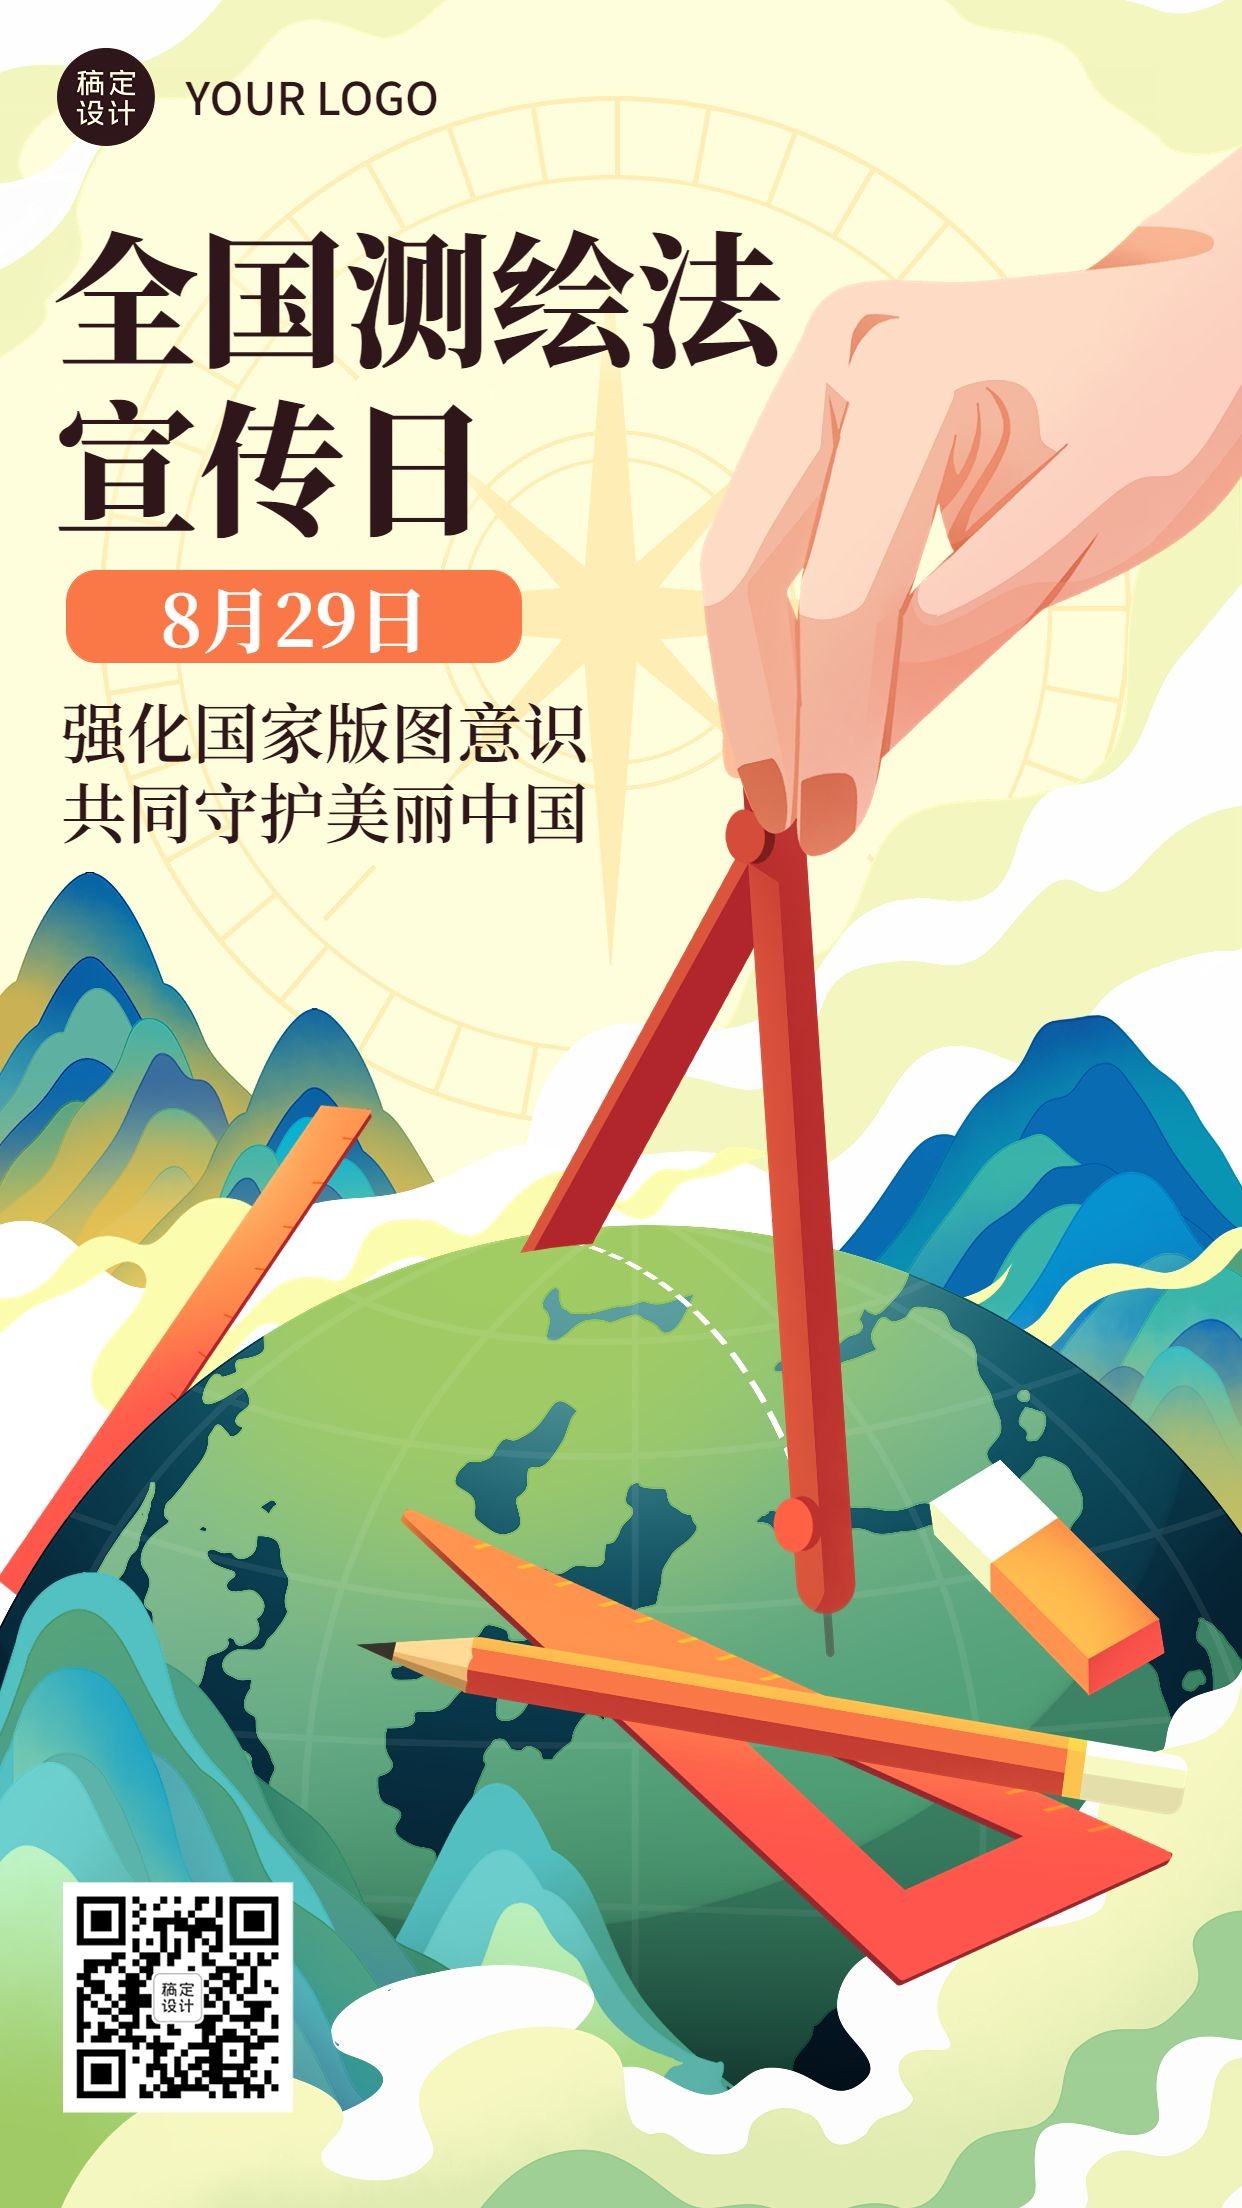 全国测绘法宣传日节日宣传手绘插画海报